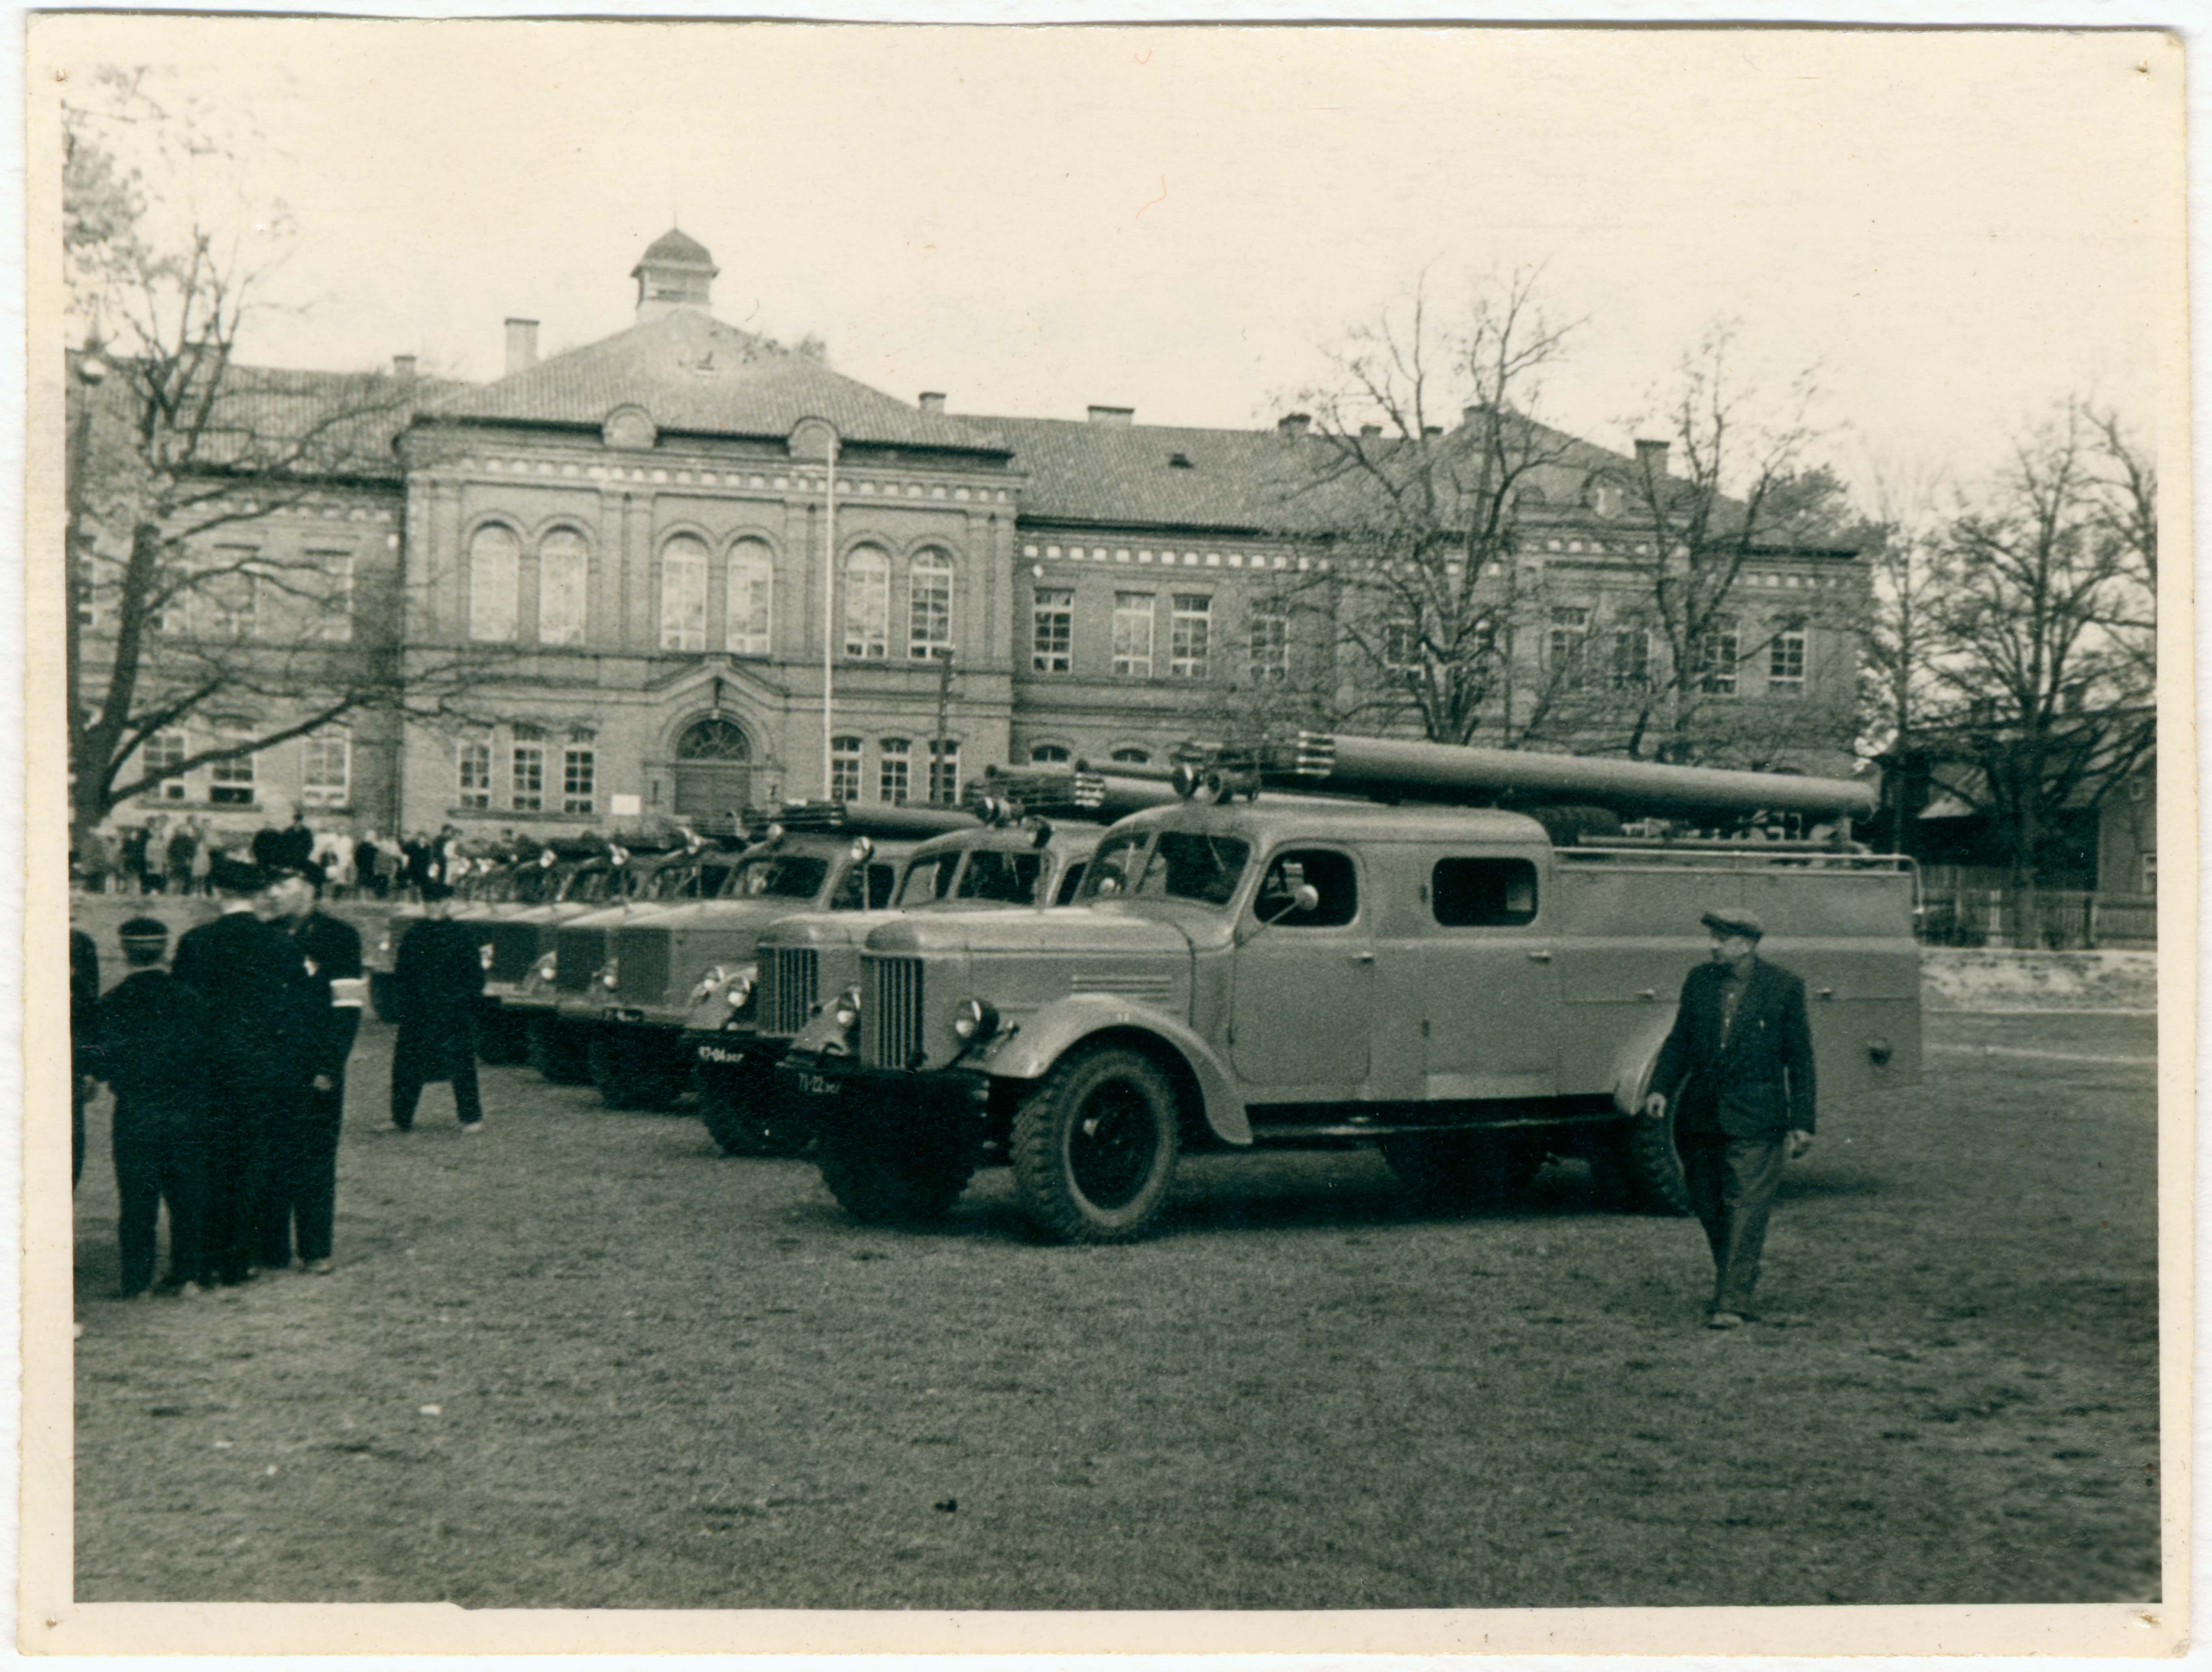 Komandodevahelised võistlused Viljandi kooli pargis, tuletõrjeautode rivi